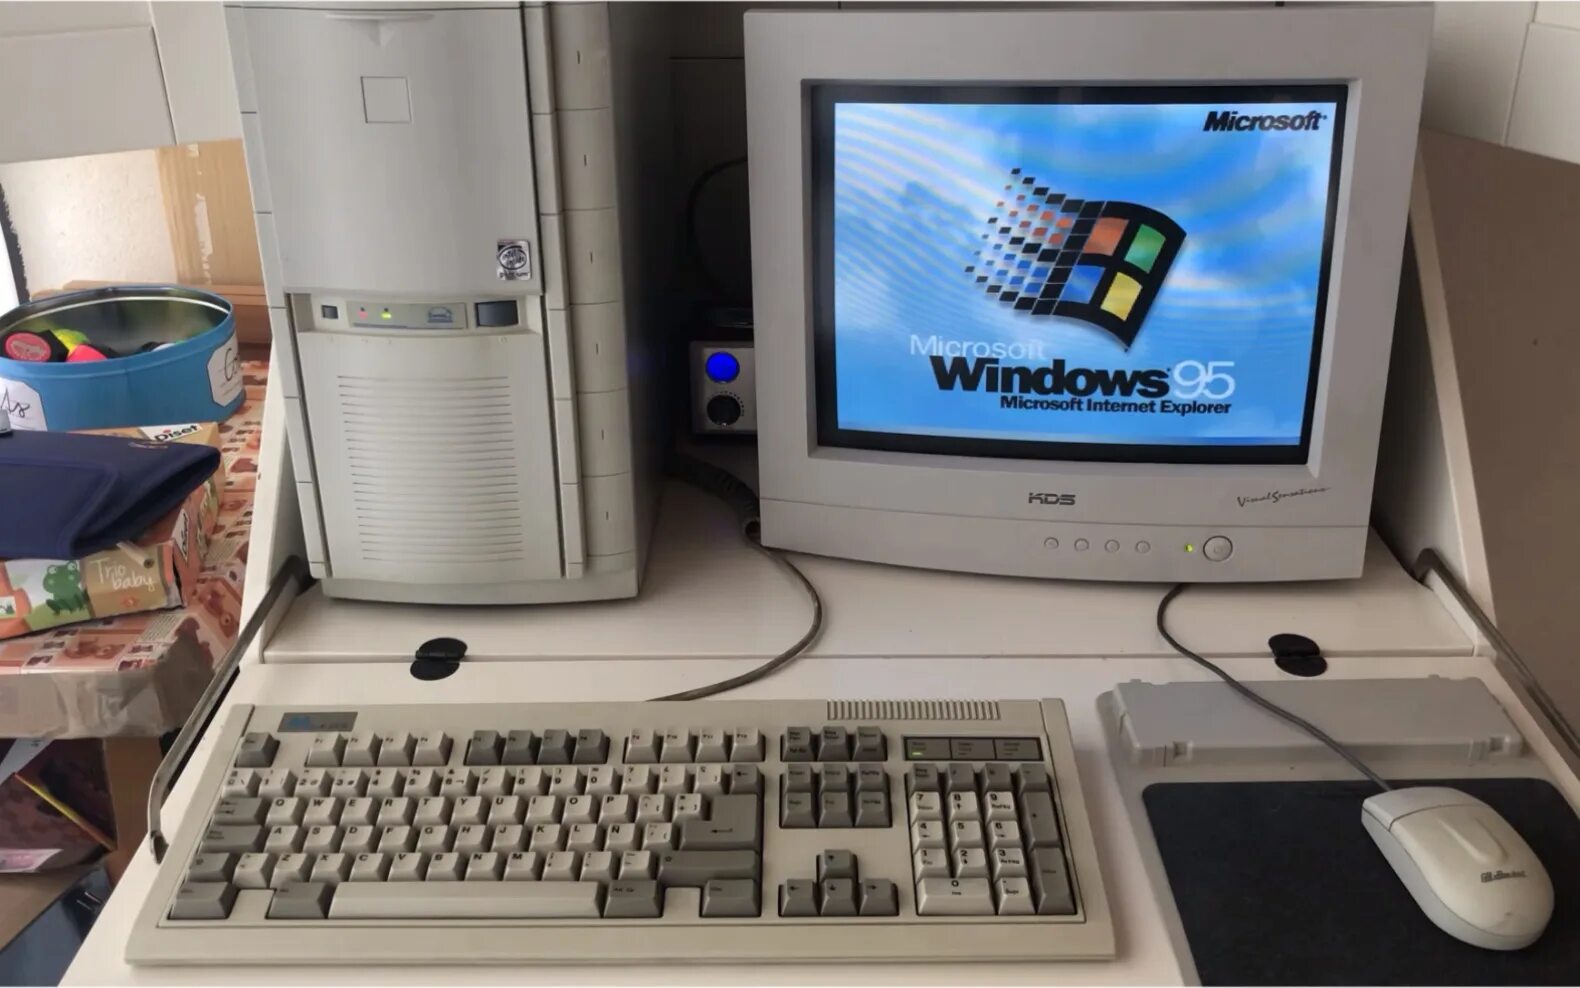 Компьютеры 98 года. Компьютер 95 года. Компьютер старый Windows 95. Windows 95 компьютер. Windows 98 PC.